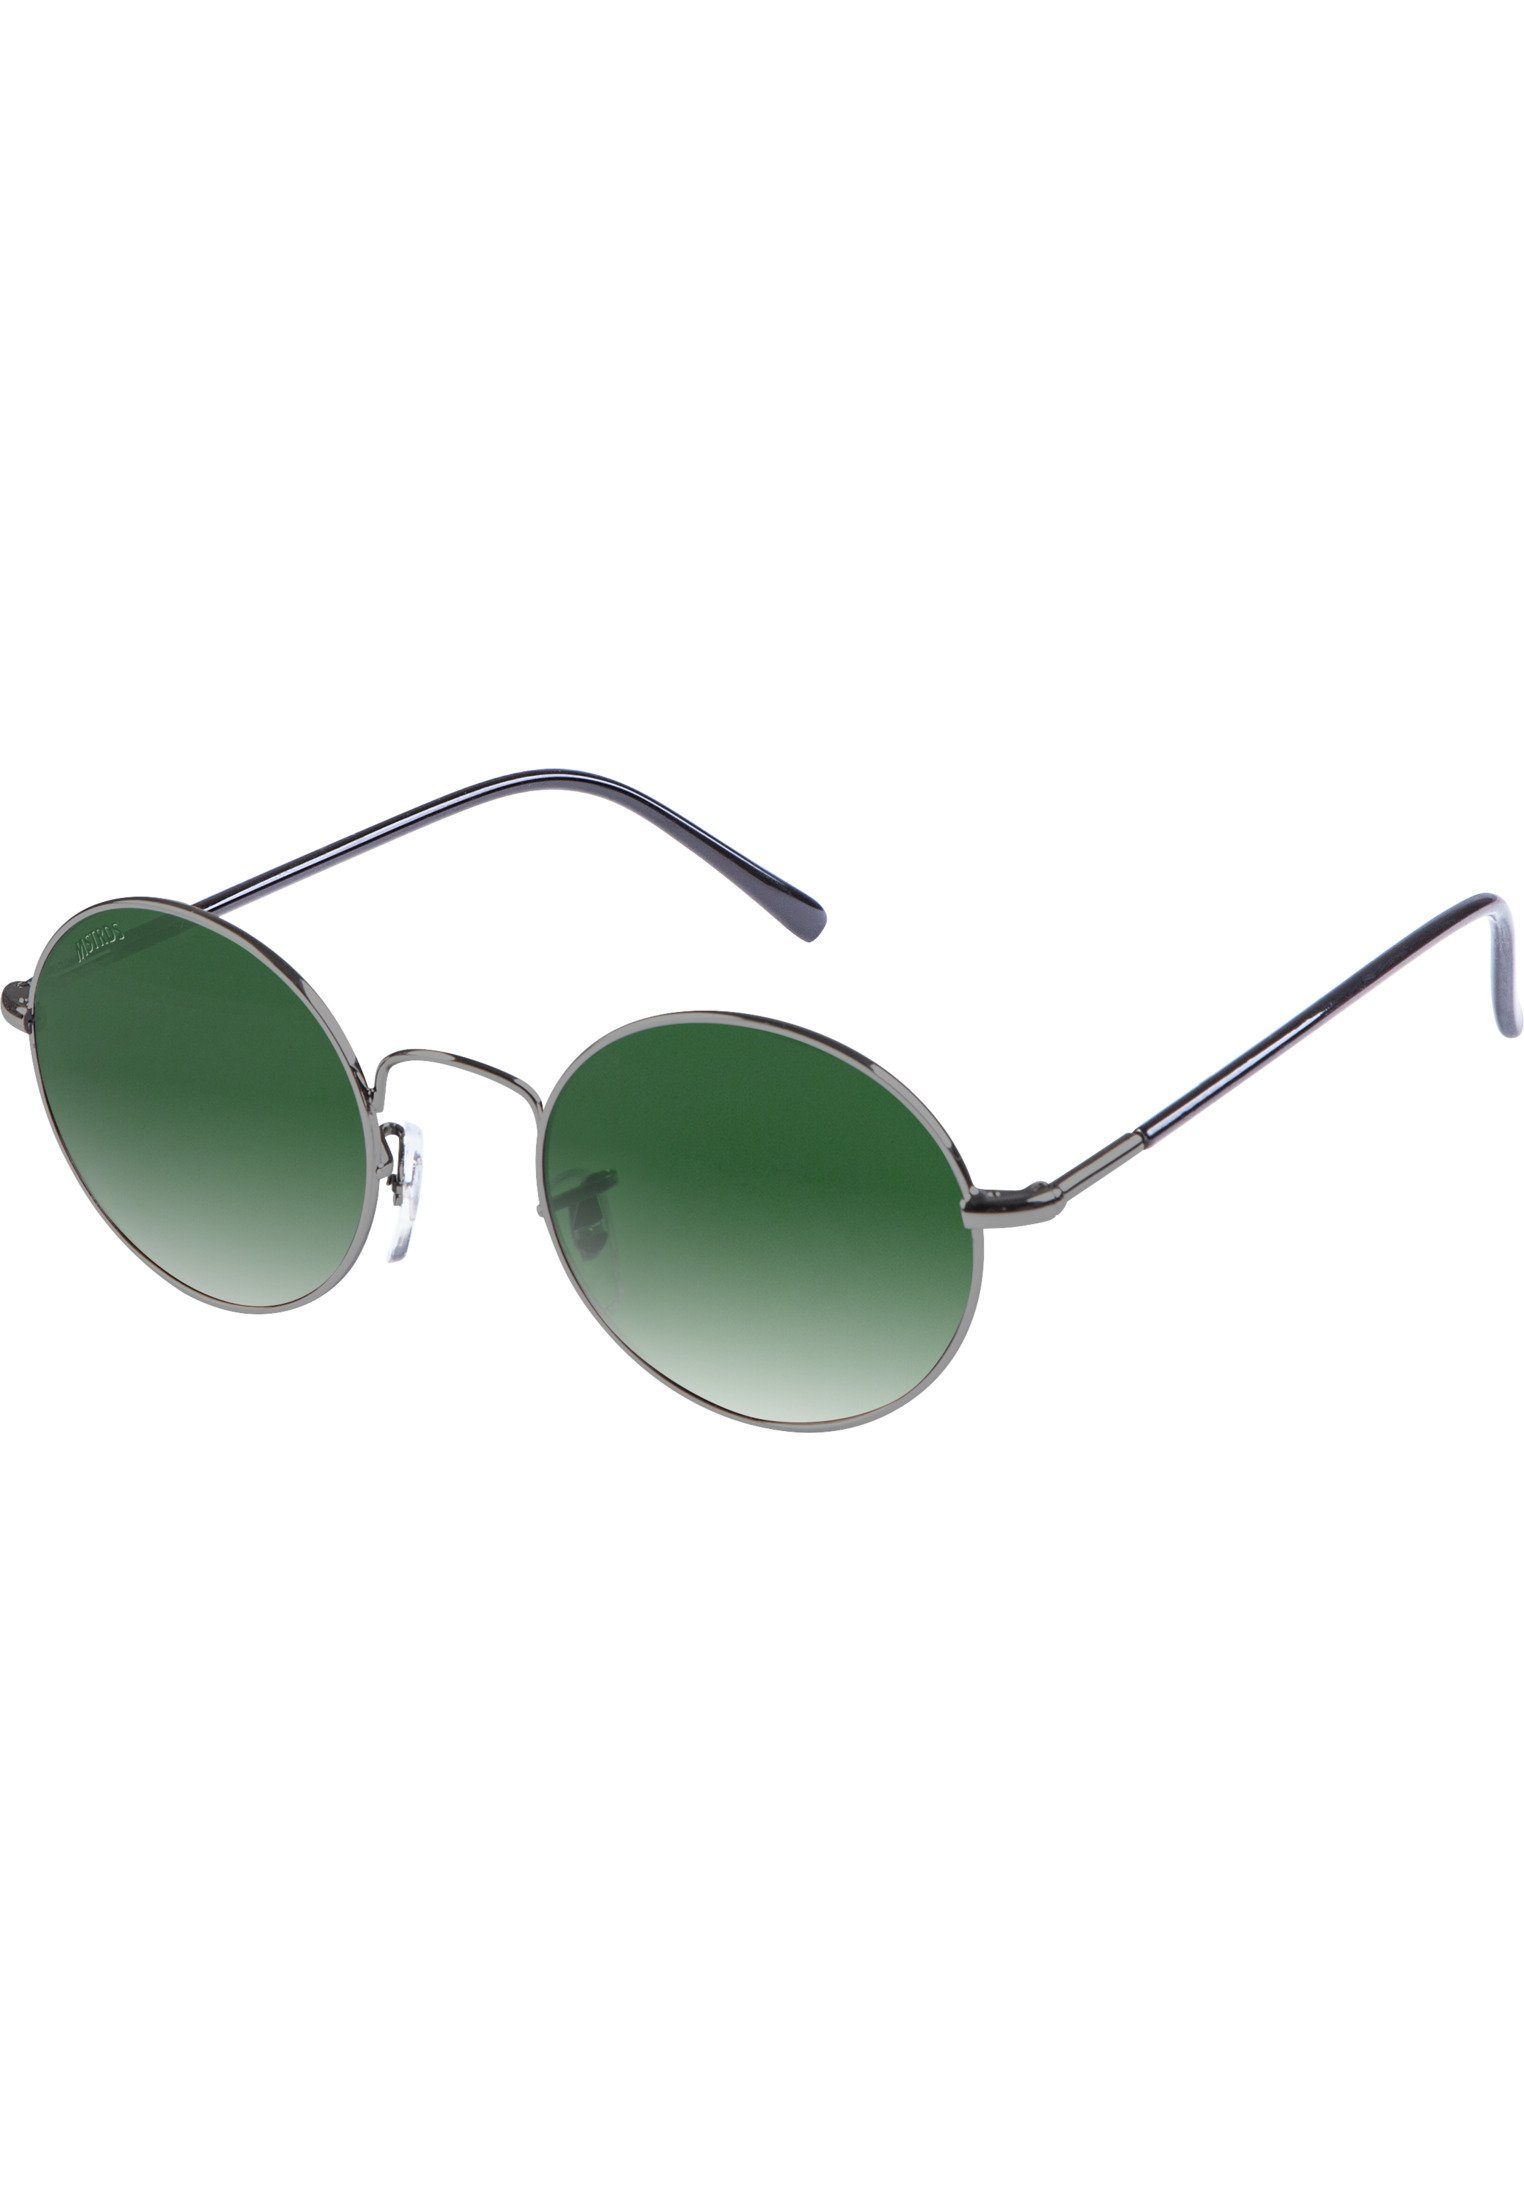 MSTRDS Sonnenbrille Accessoires Flower Sunglasses